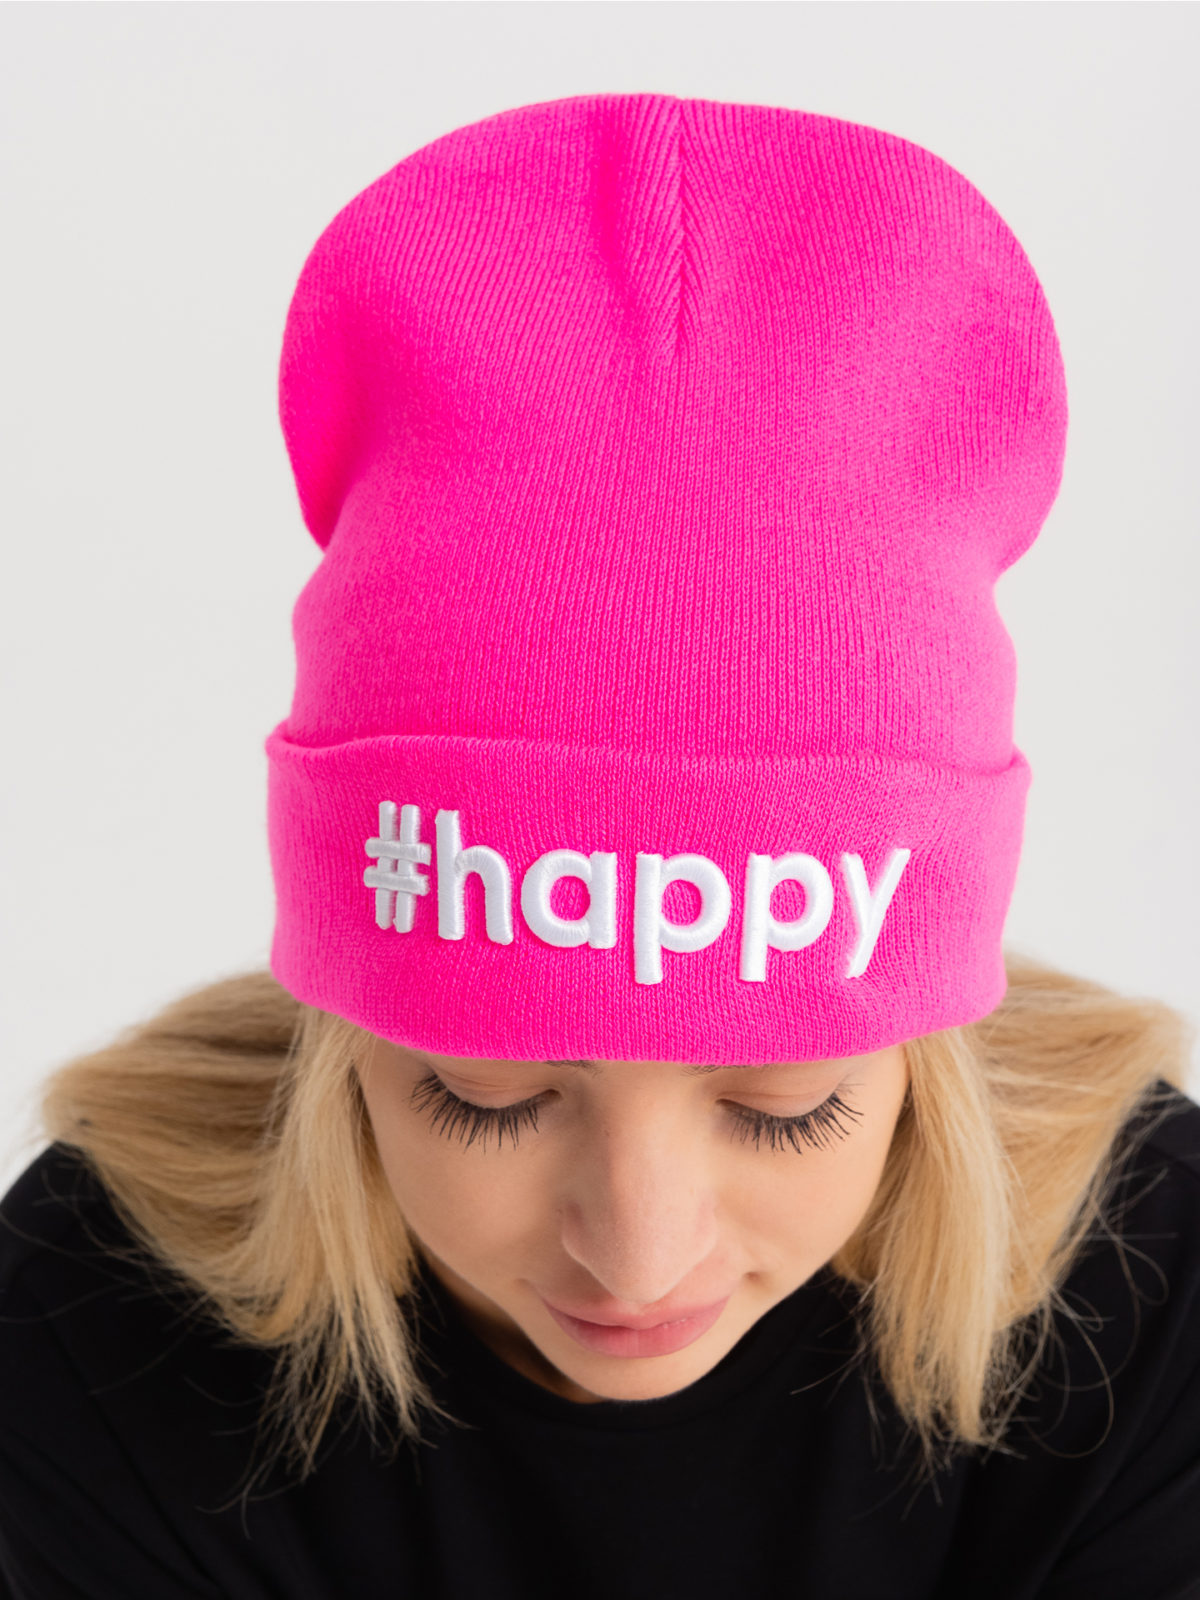 Шапка-лопатка Tag #happy - Розовая 2